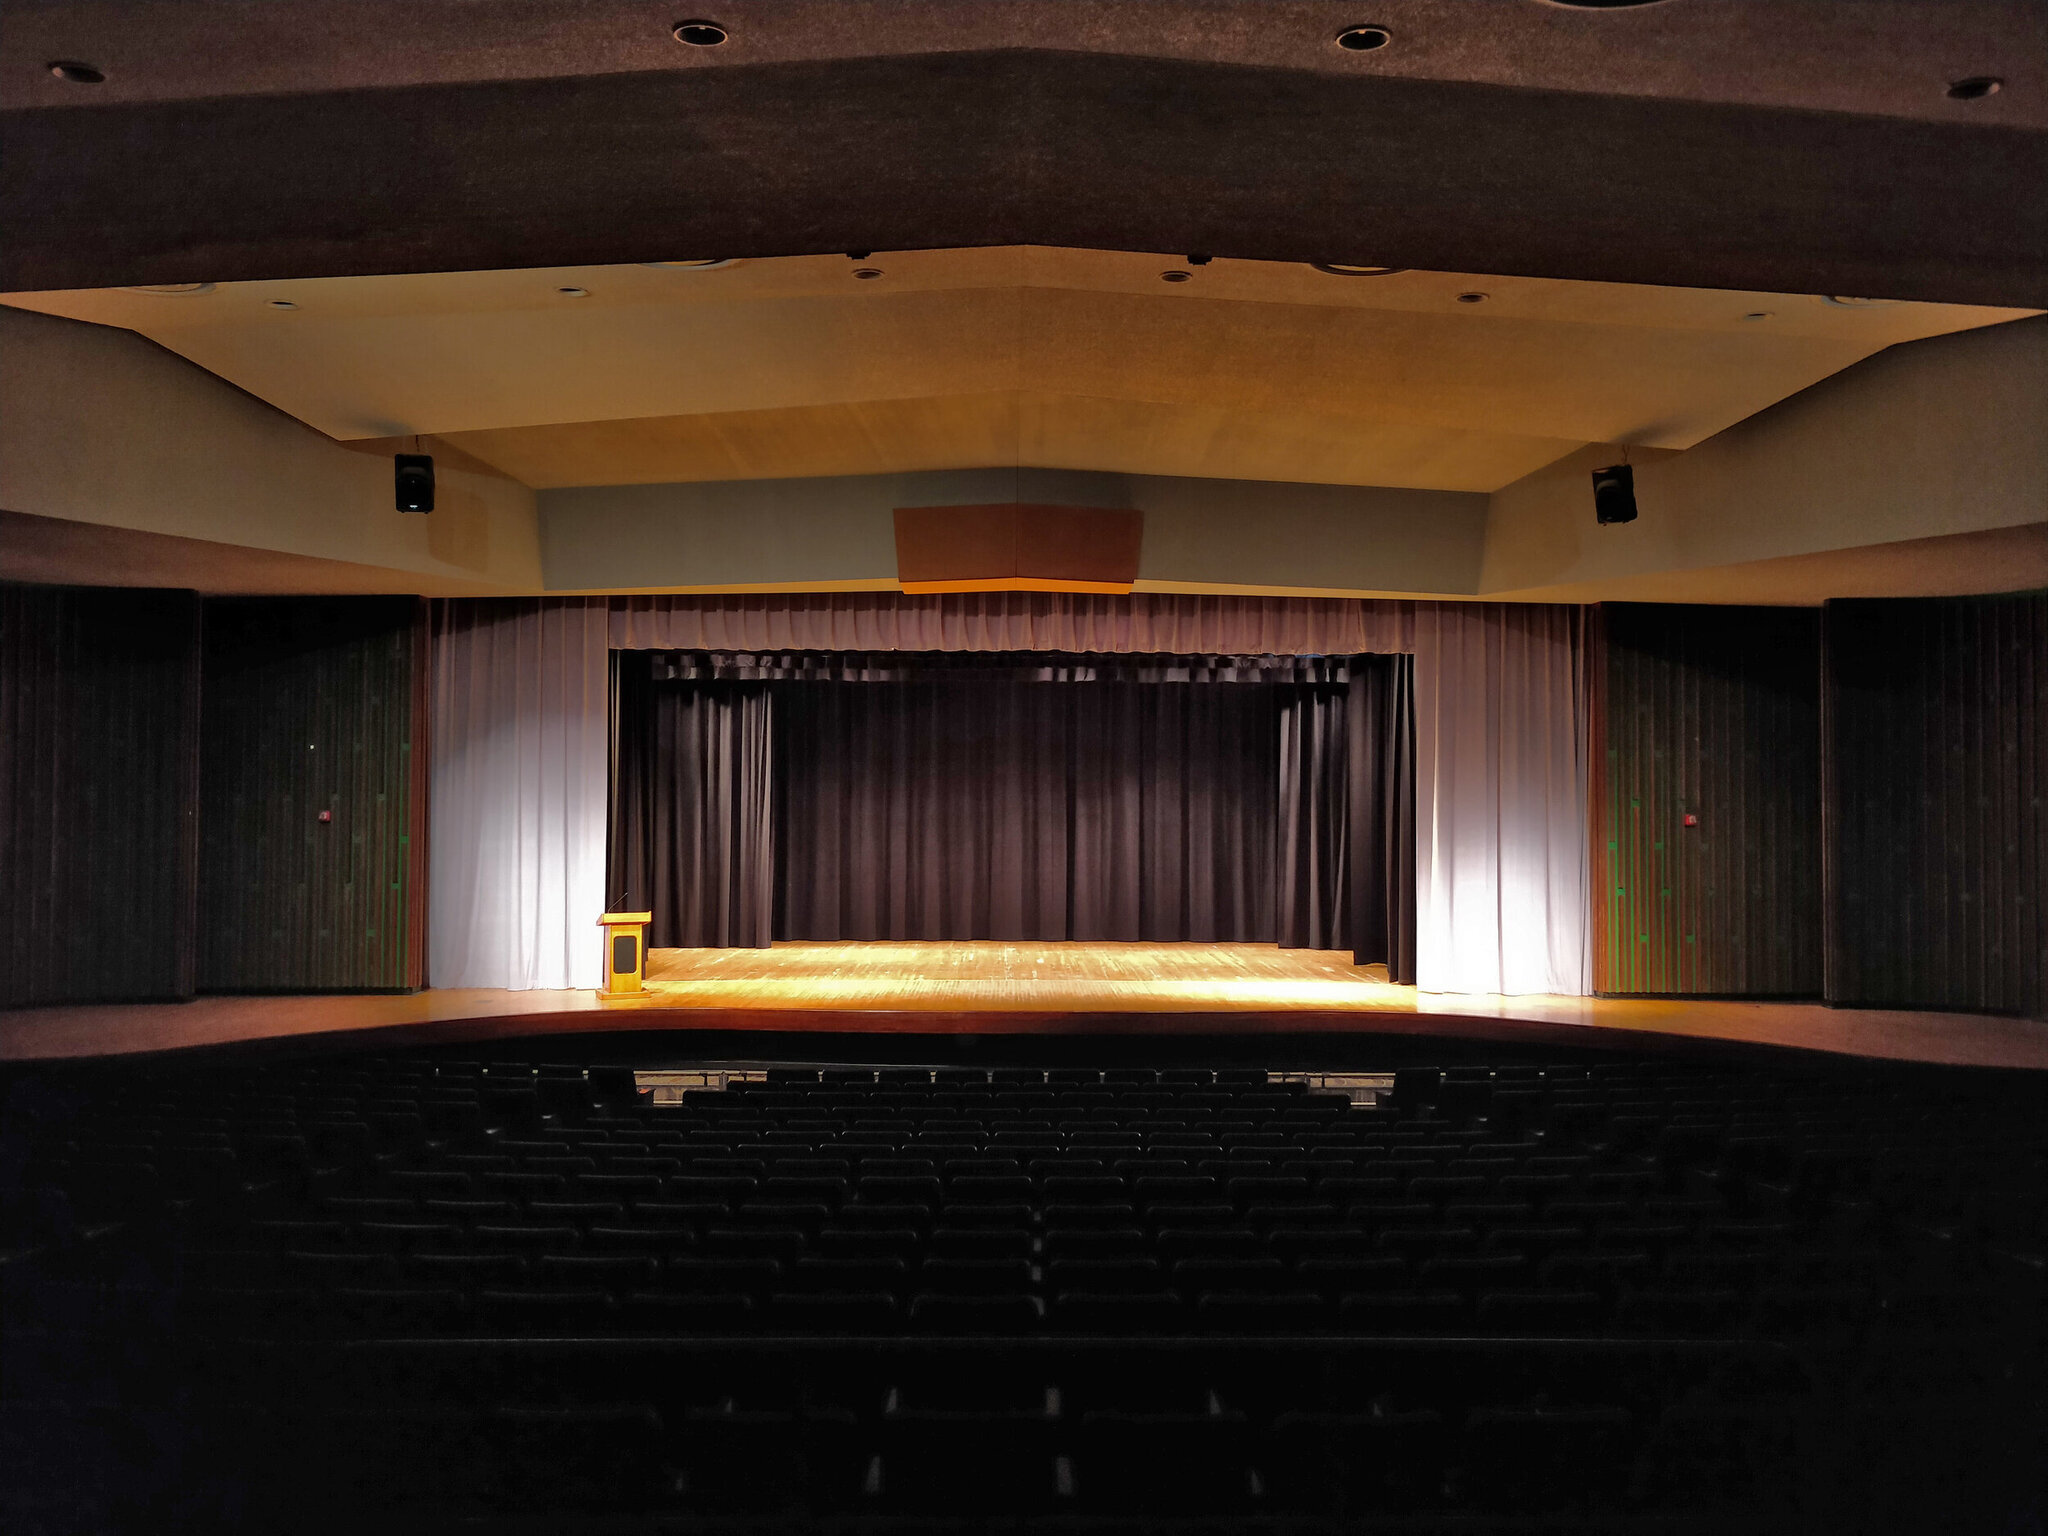 school auditorium